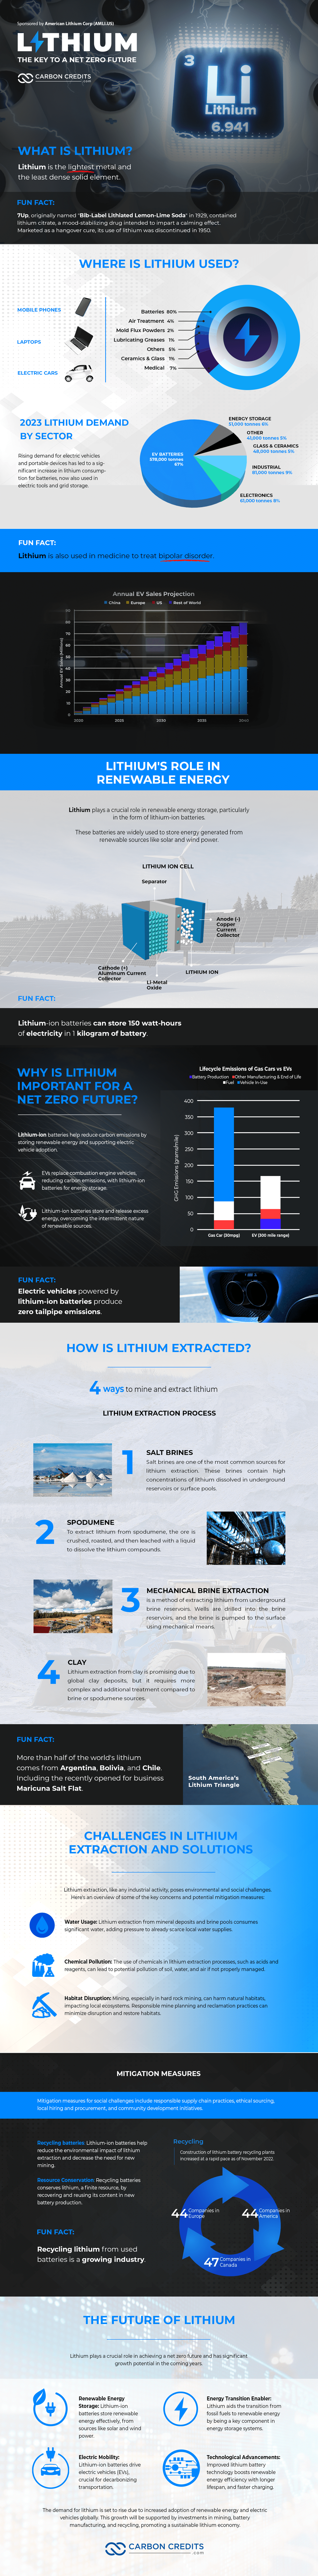 CC Infographic Lithium